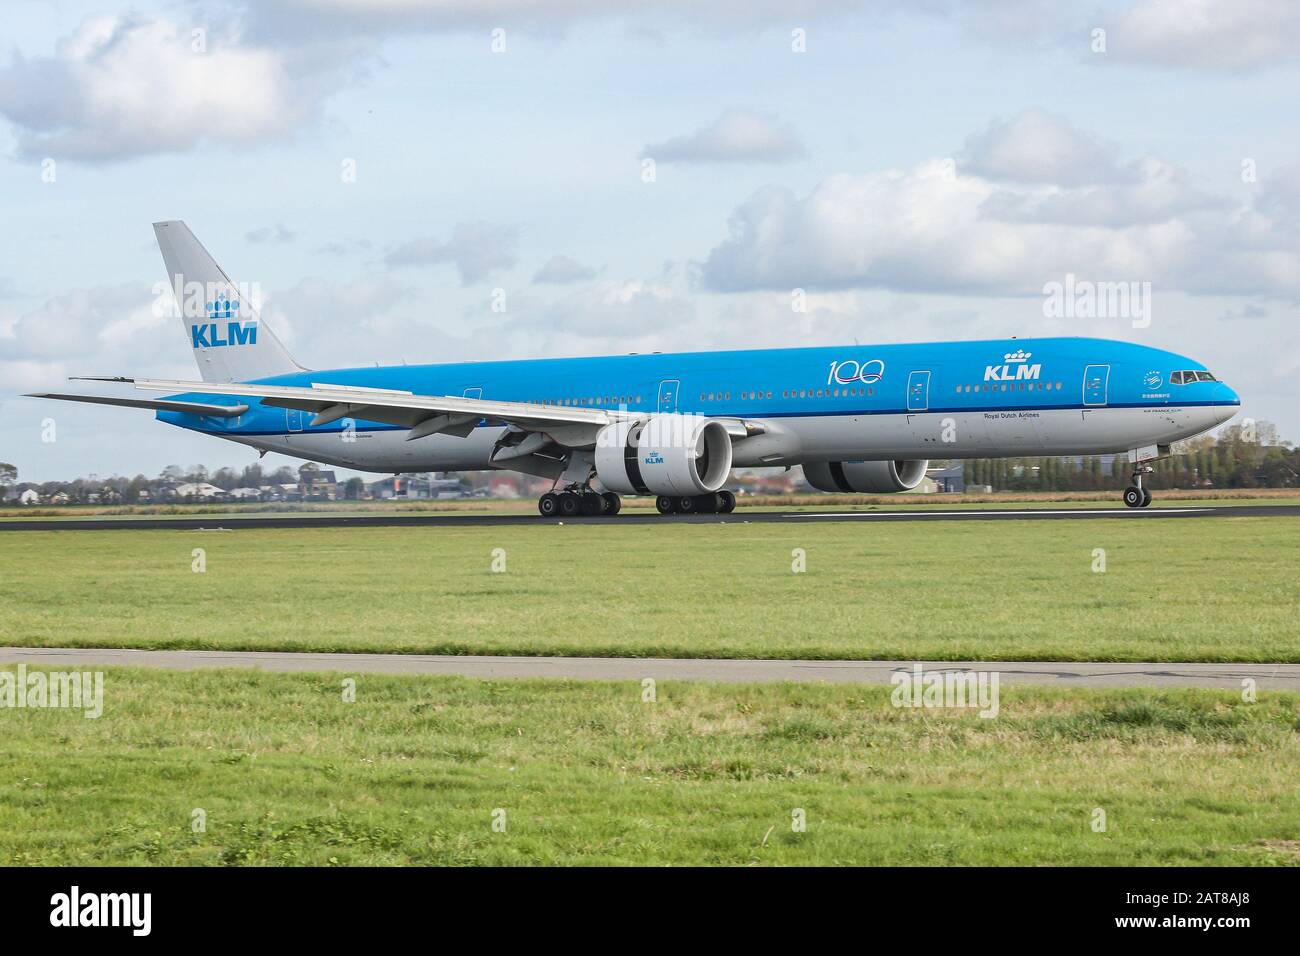 Un avión de cuerpo ancho Boeing 777-300 de KLM Royal Dutch Airlines aterriza en el aeropuerto Schiphol AMS EHAM de Ámsterdam, en los países Bajos, en la pista de Polderbaan. El avión cuenta con la certificación ETOPS para vuelos transatlánticos. Foto de stock